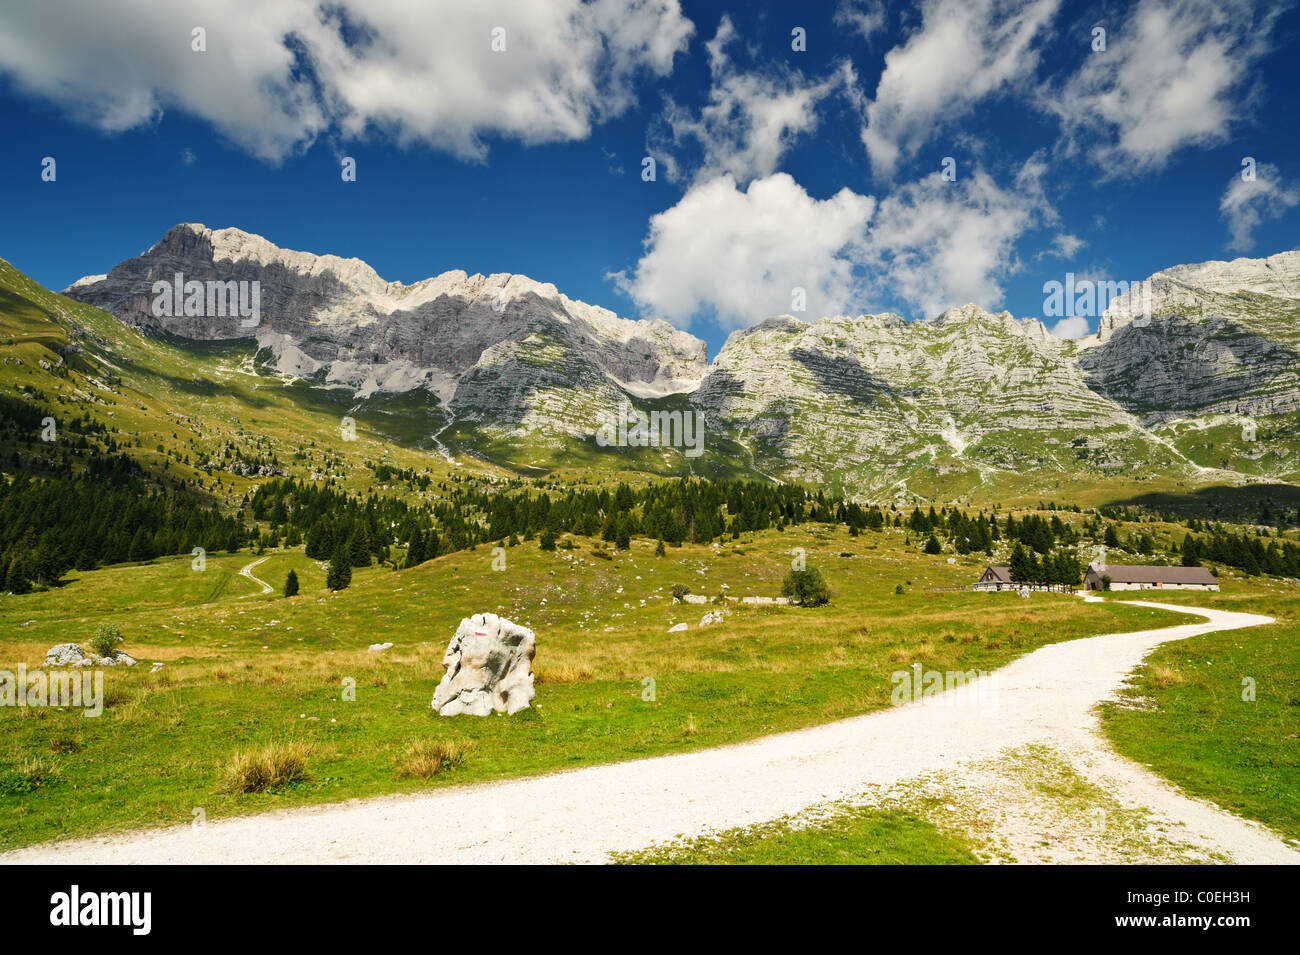 Sentier de randonnée de montagne dans la région de Montasio plateau, Sella Nevea, Italie. La randonnée ou l'alpinisme populaire vue. Banque D'Images